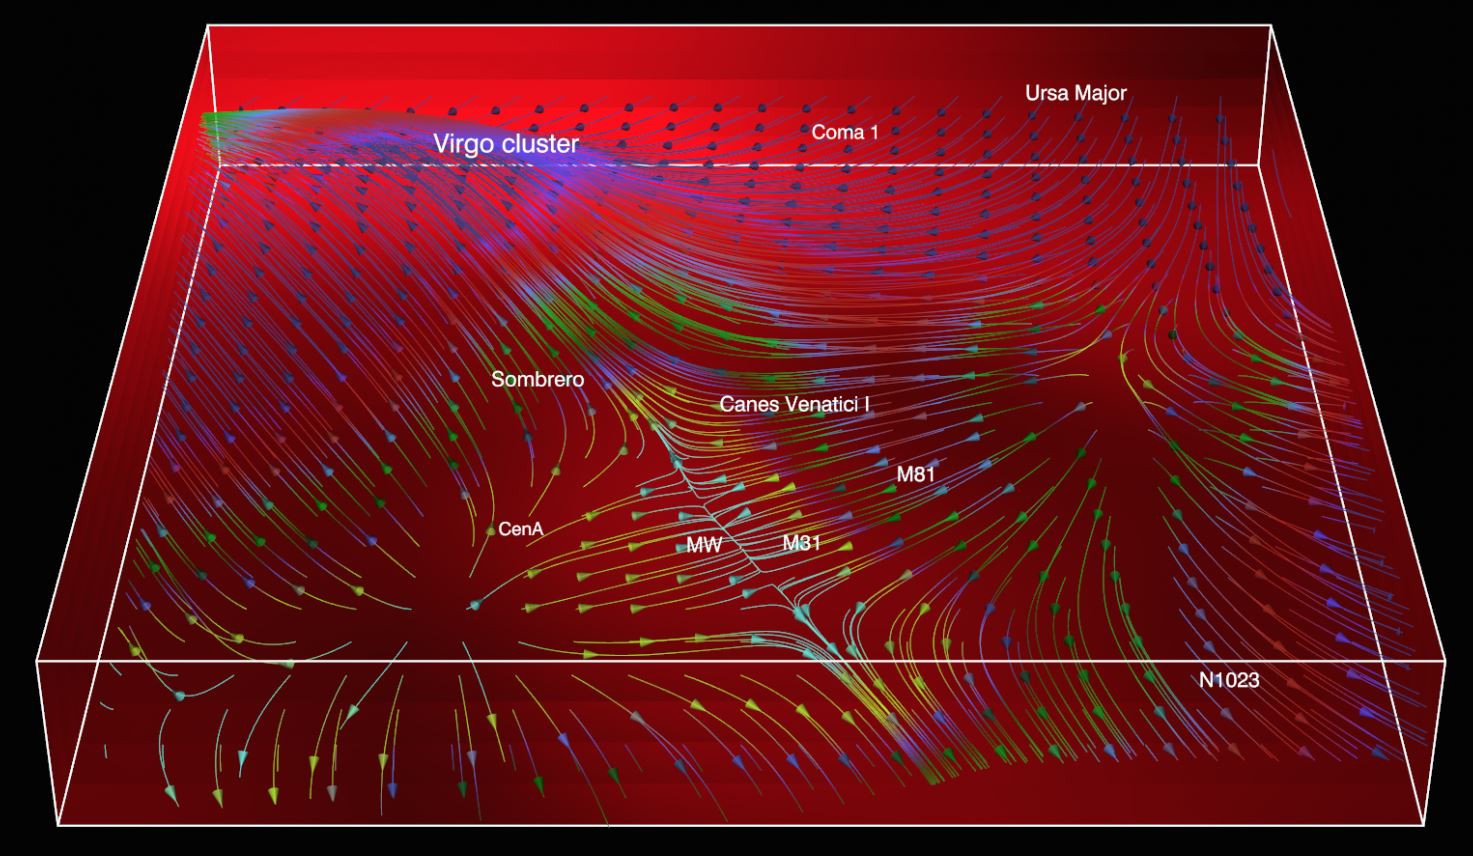 Dark-matter-bridge from-Milky-Way-to-Virgo-Cluster